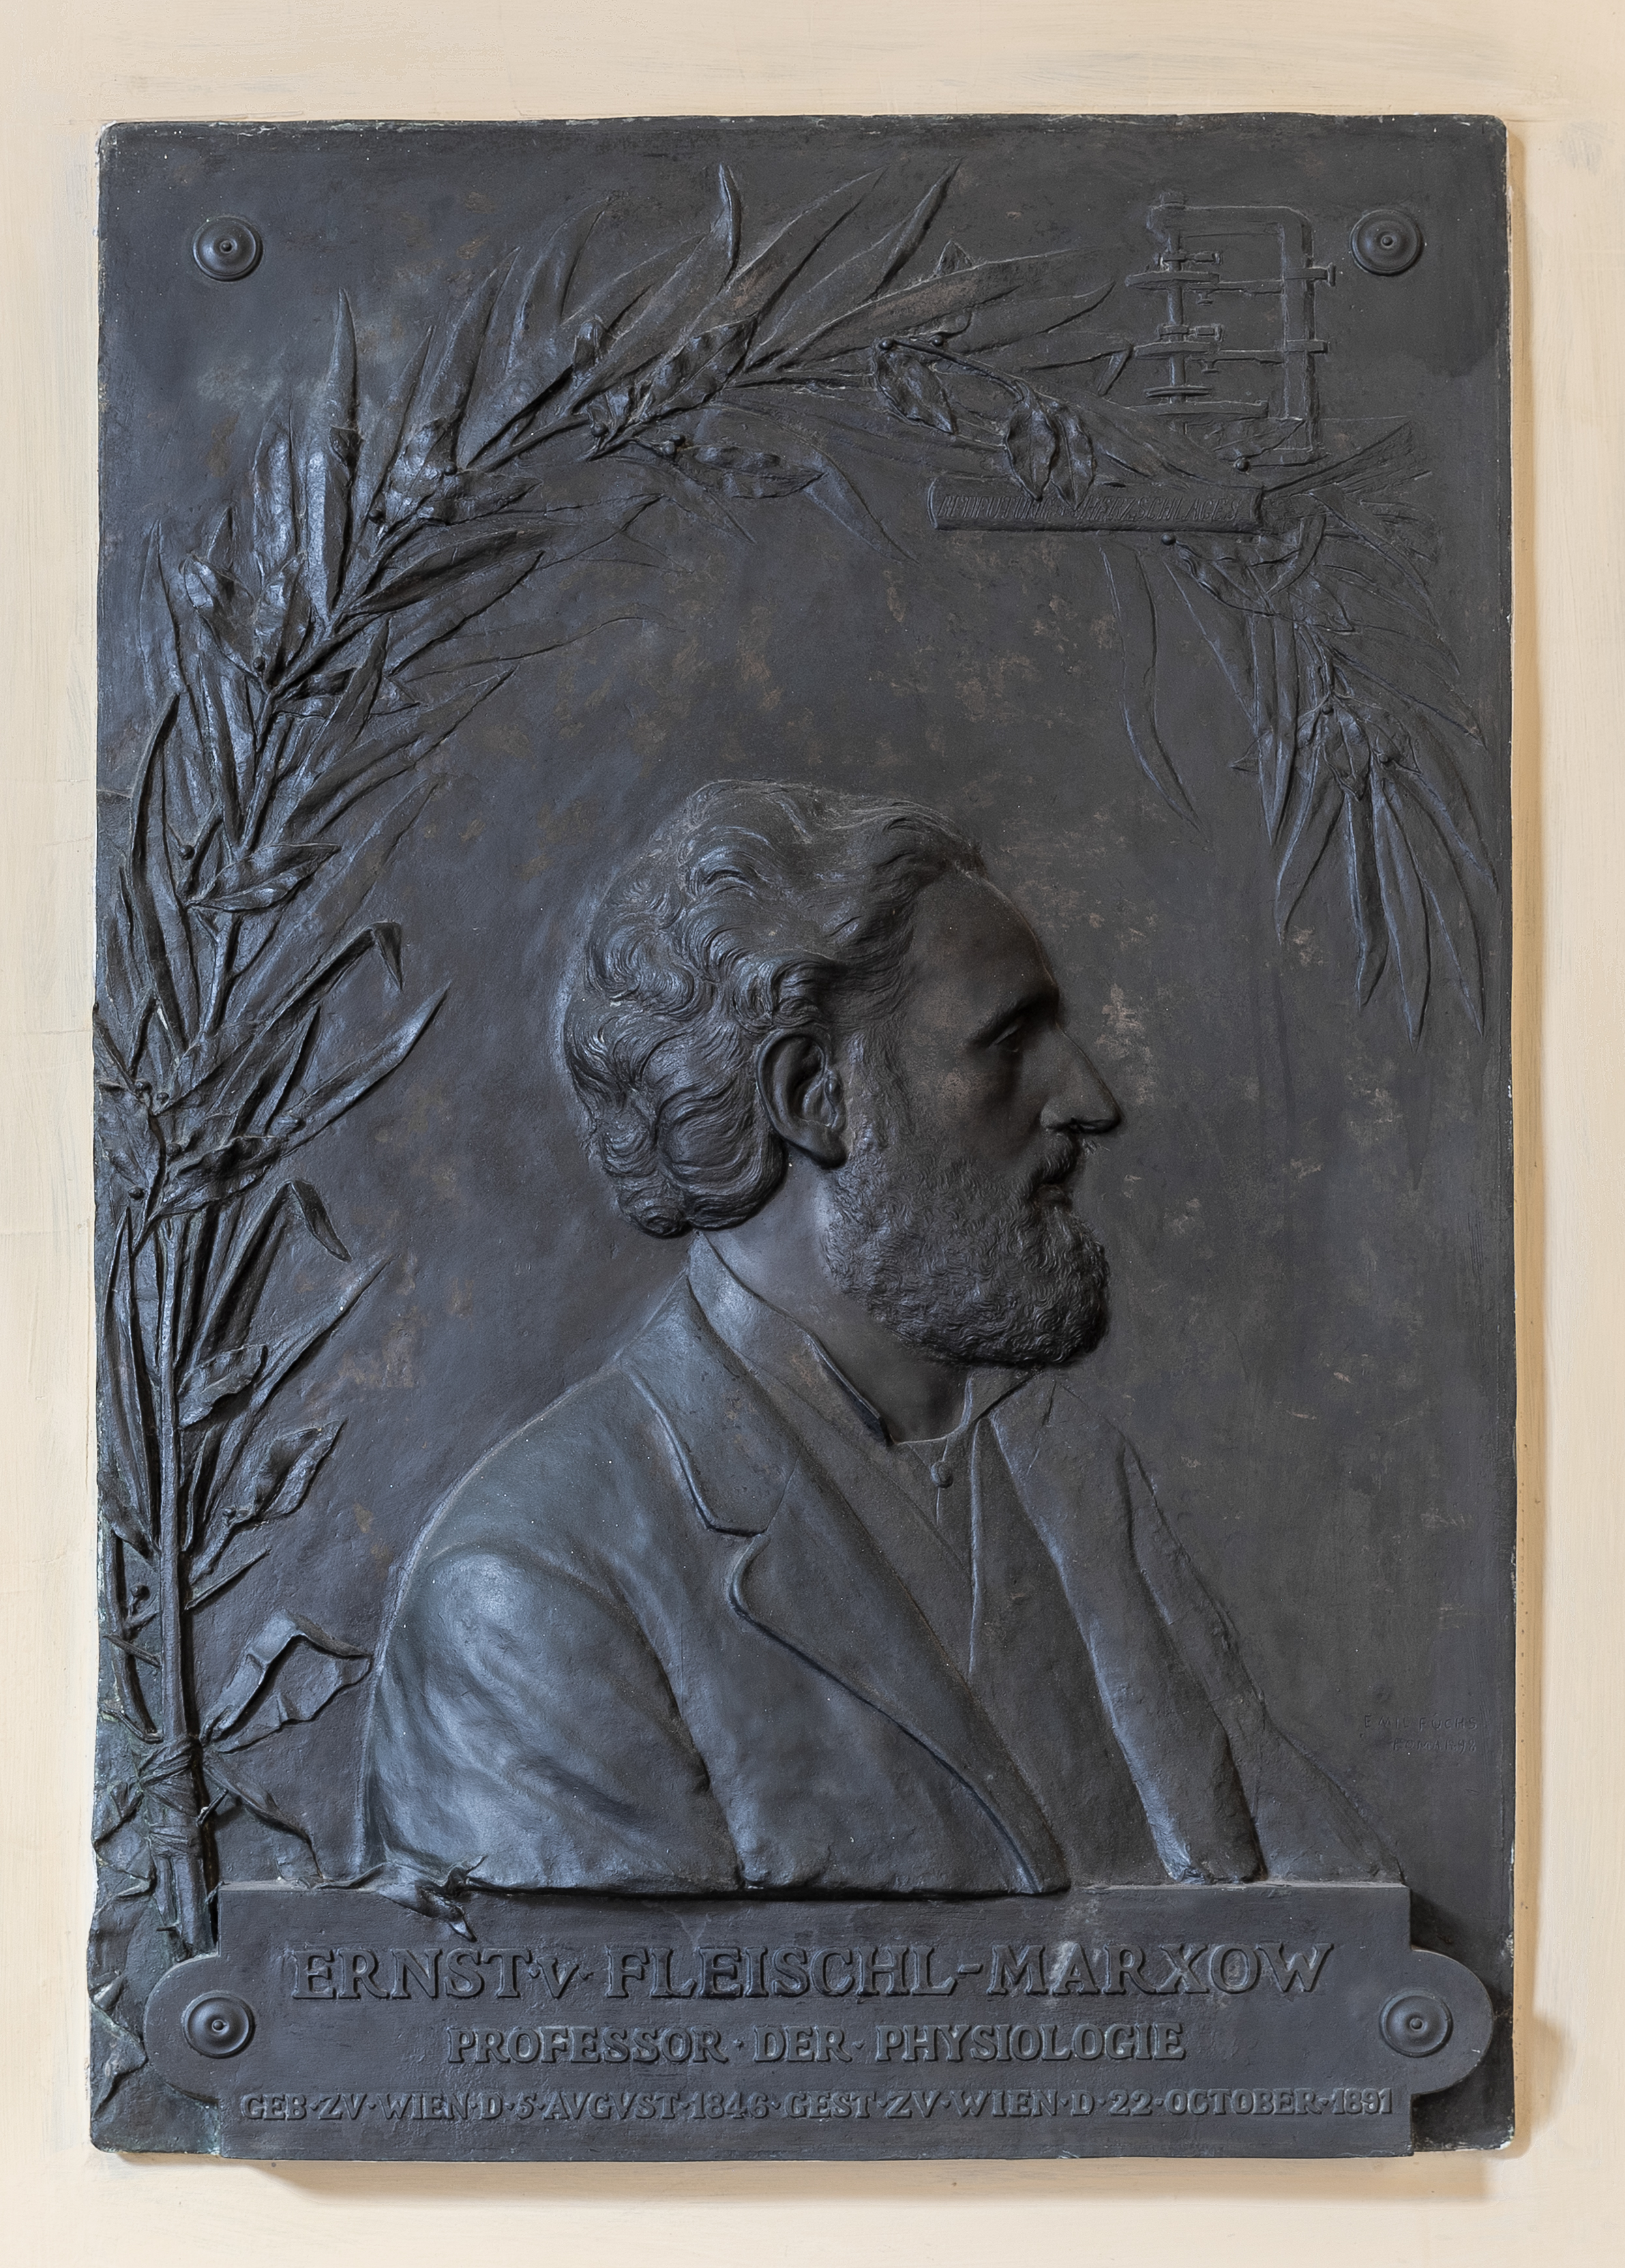 Ernst Fleischl von Marxow (1846-1891), basrelief (bronce) Nr. 84 in the Arkadenhof of the University of Vienna-1989